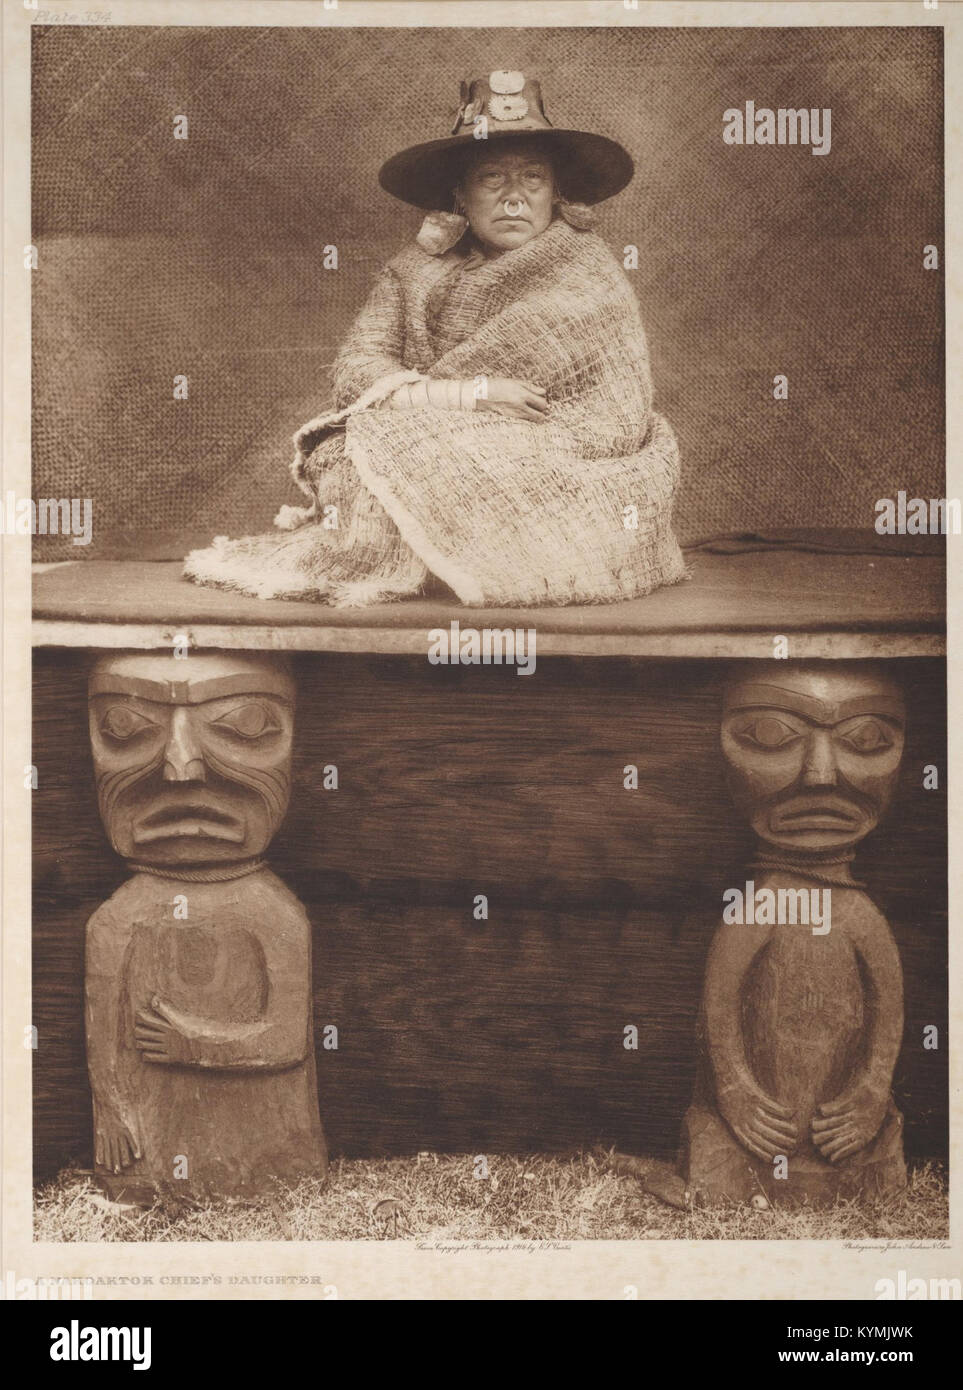 A Nakoaktok Chief's Daughter 2838815503 o Stock Photo